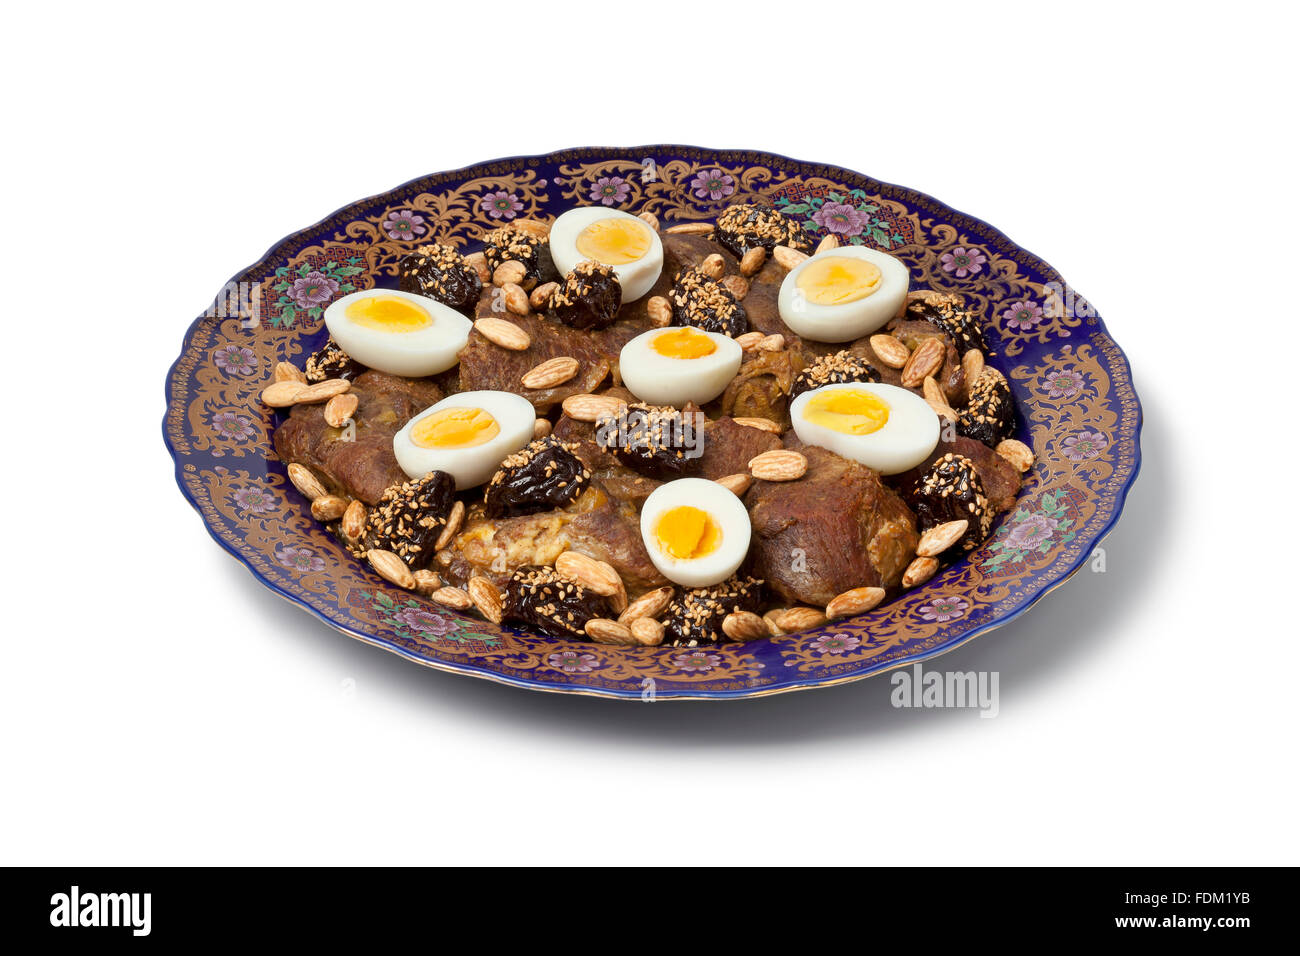 Marokkanische Feier Gericht mit Fleisch, Pflaumen, Mandeln und Eiern auf weißem Hintergrund Stockfoto